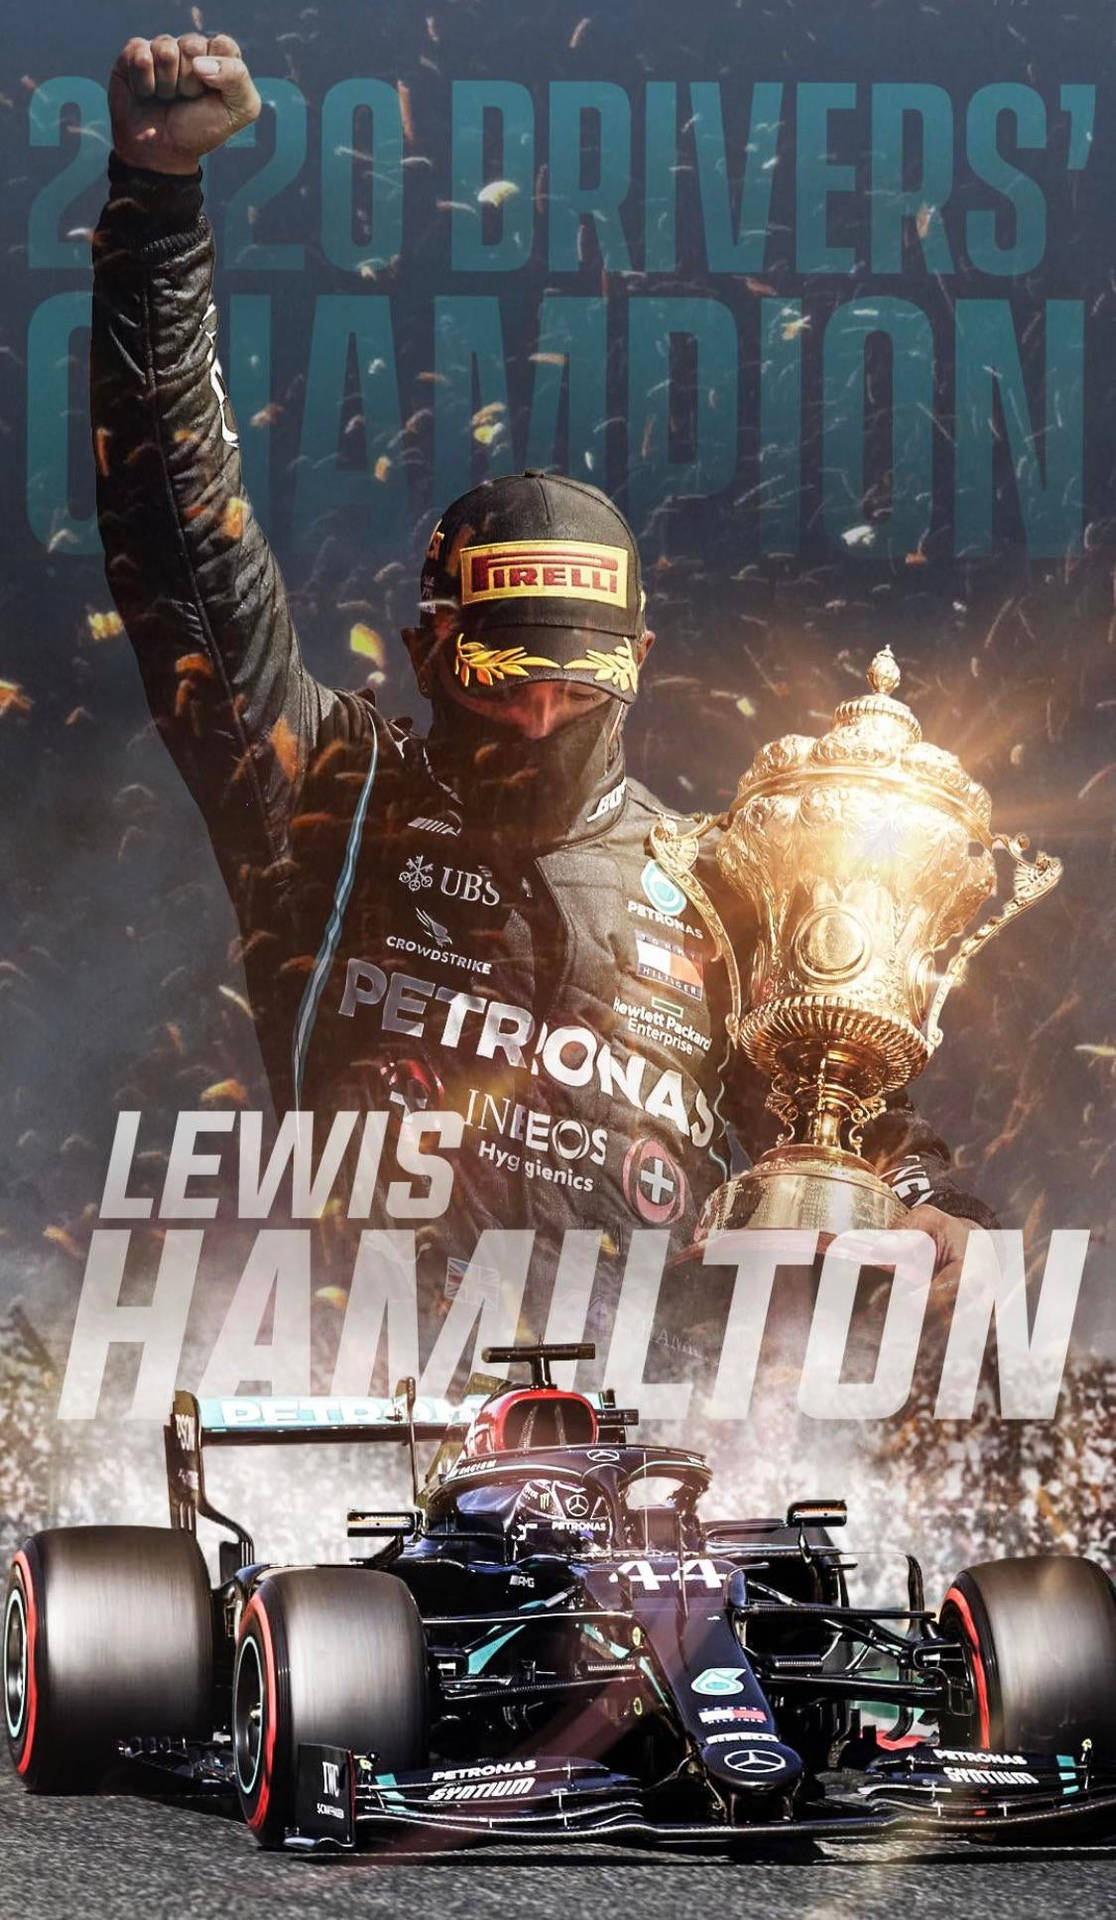 Lewishamilton Ist Der Fahrer Für Den Gewinner Der Fahrermeisterschaft 2020. Wallpaper